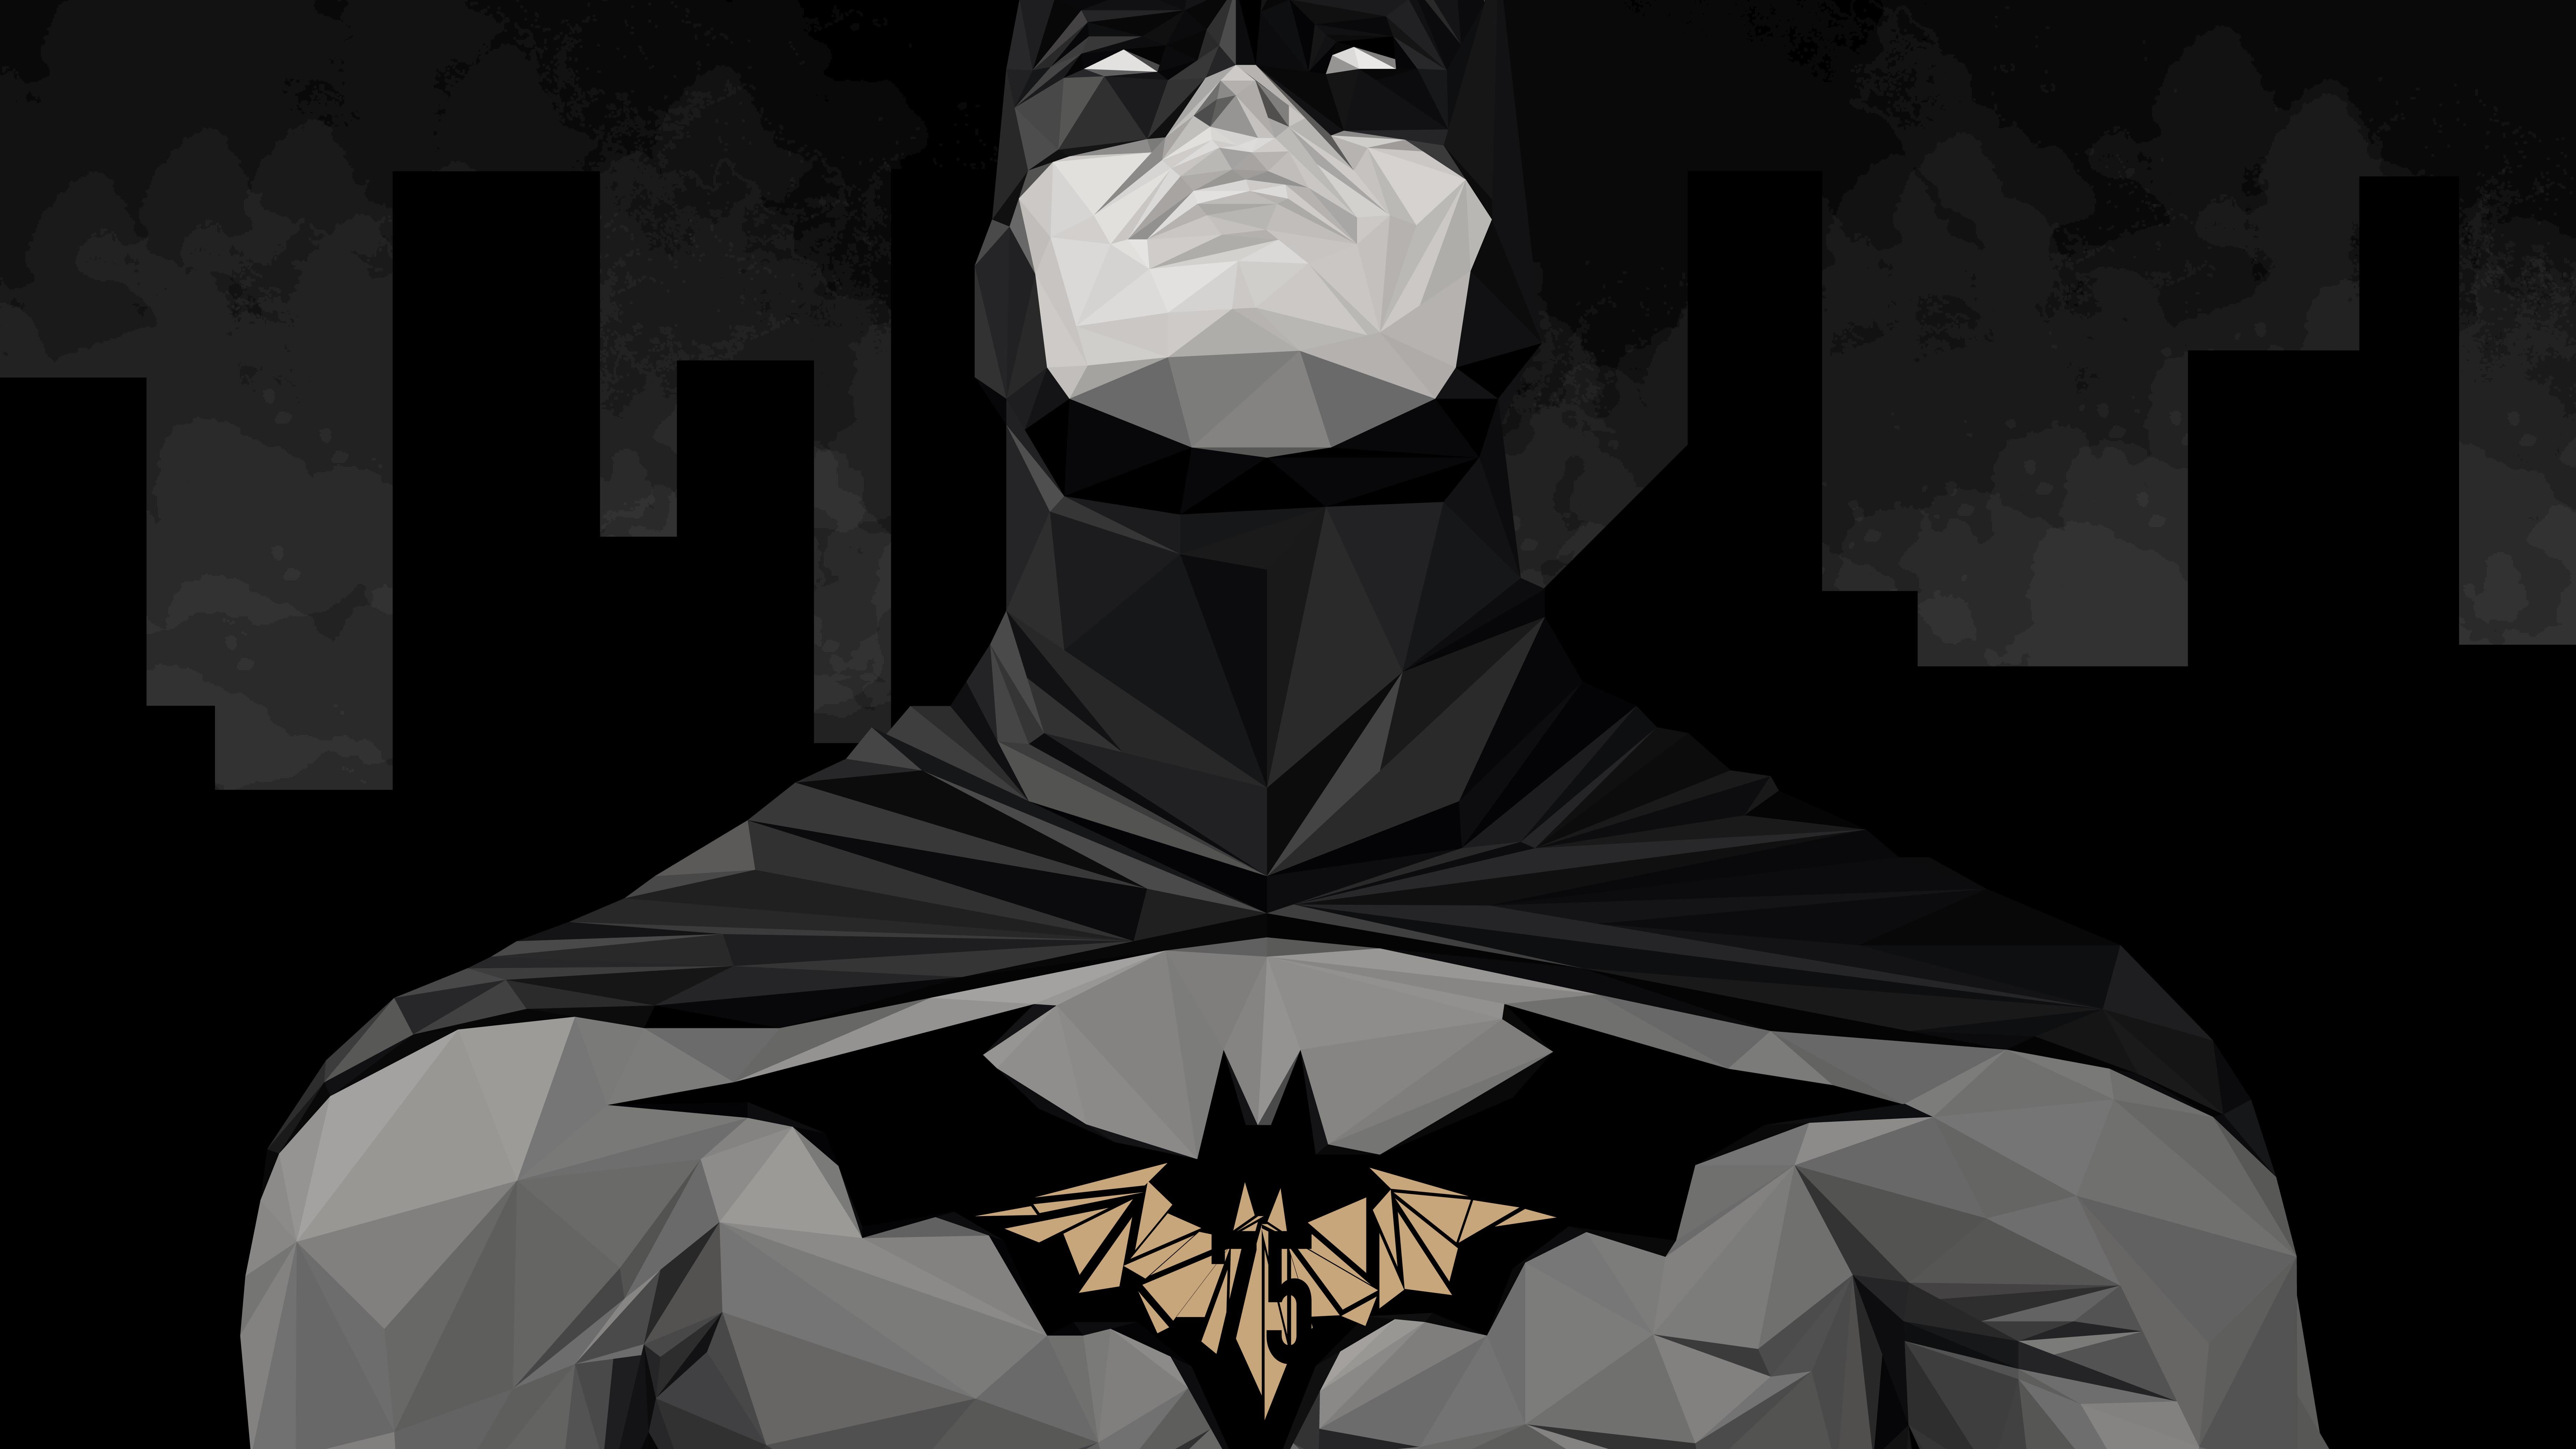 Batman Minimal Artwork 4K 8K Wallpapers, HD Wallpapers